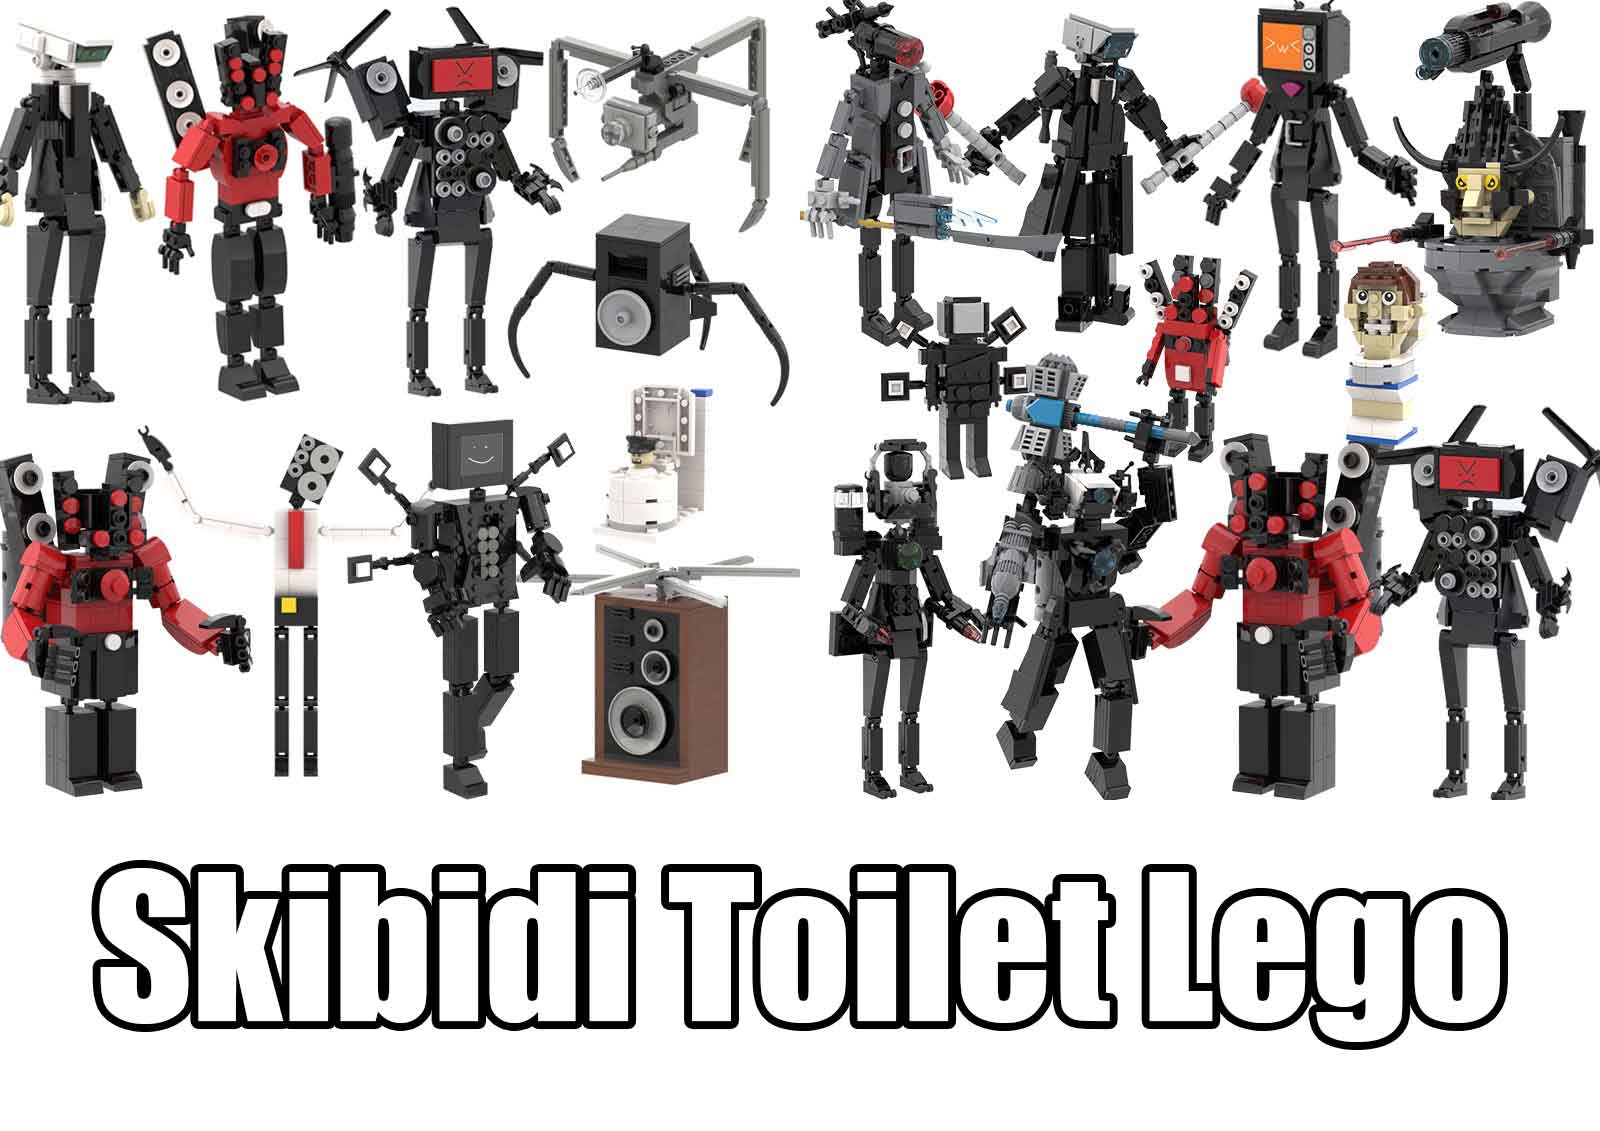 Skibidi Toilet LEGO: Building G-Man Toilet Minifigures 